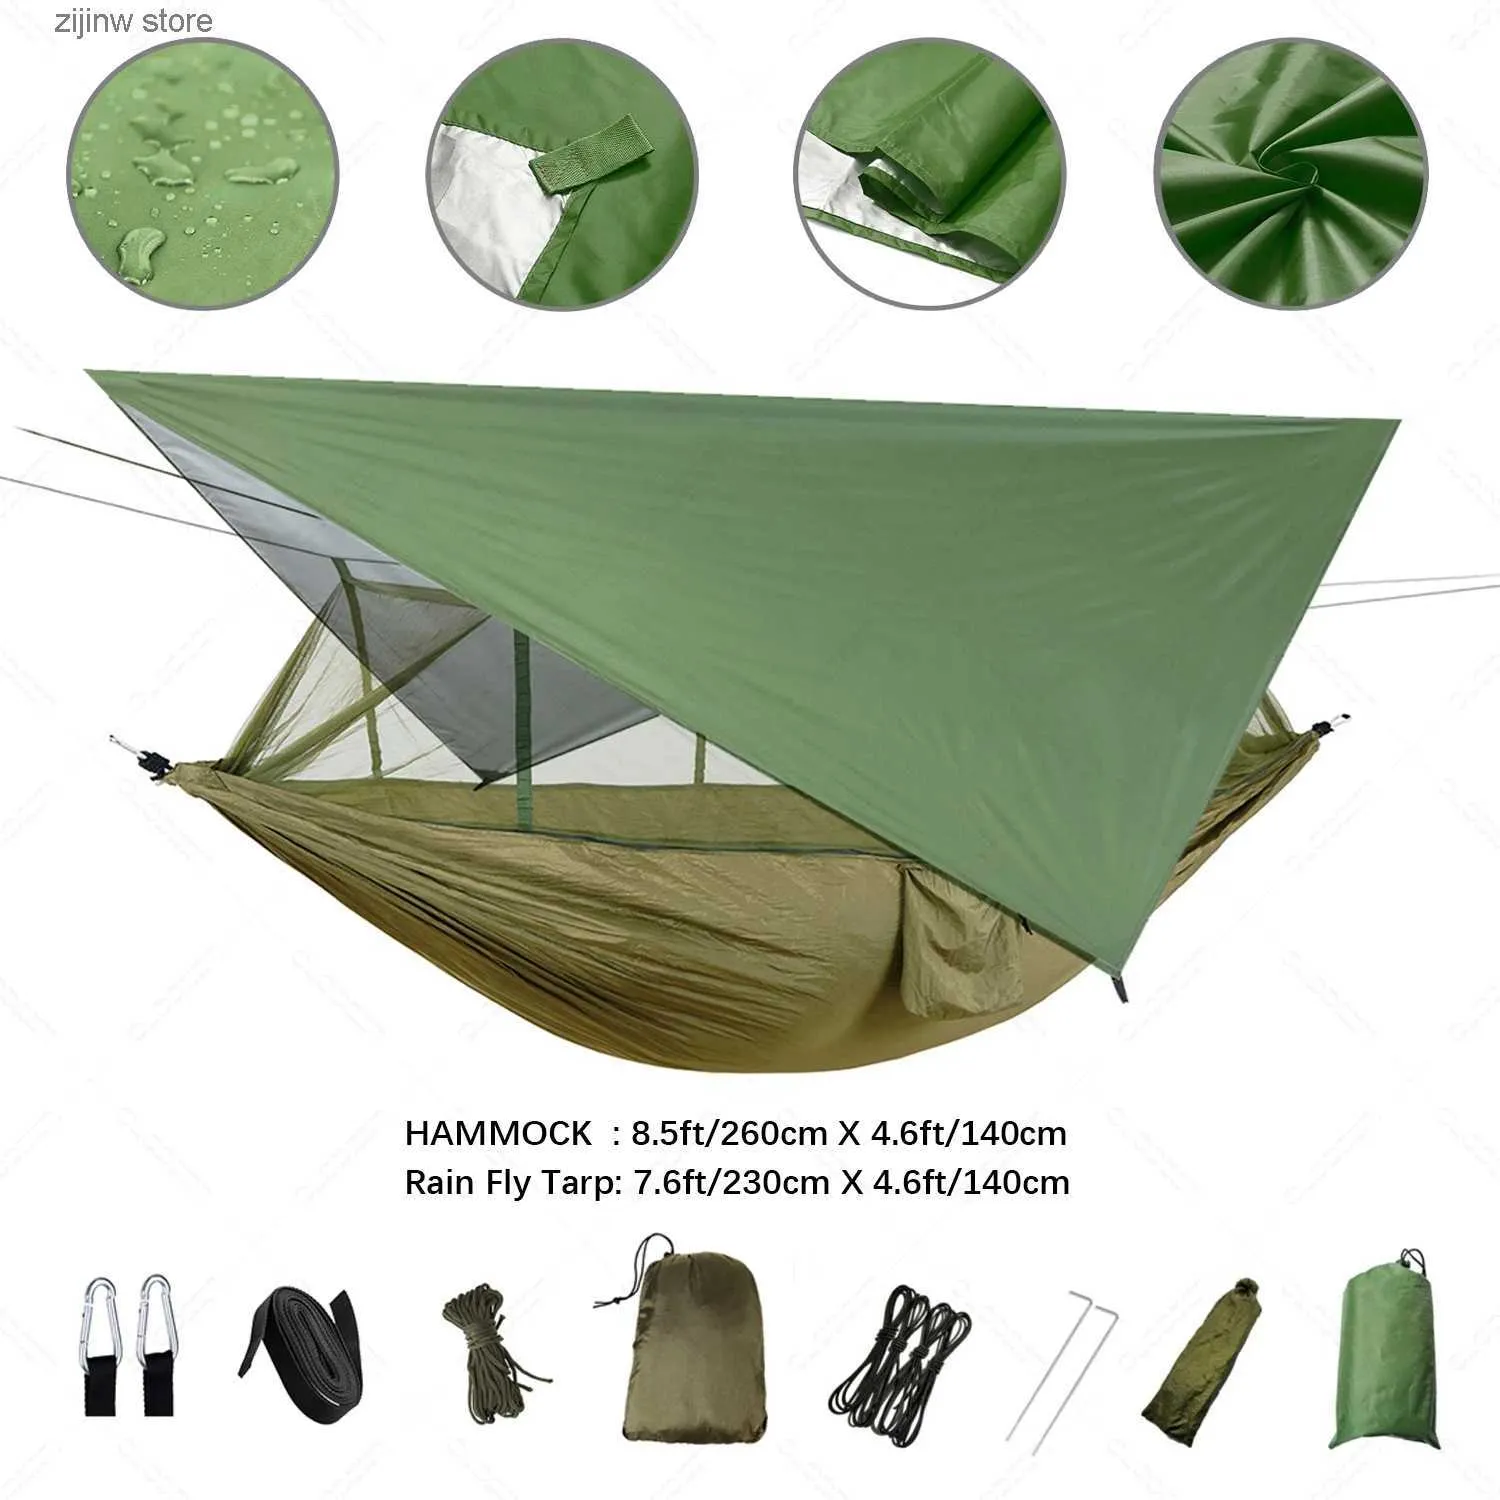 Hammocks açık kamp hamakları, sivrisinek ağları ve kanopileri ile barınak kamp yatakları ve taşınabilir hayatta kalma hamakları y240322